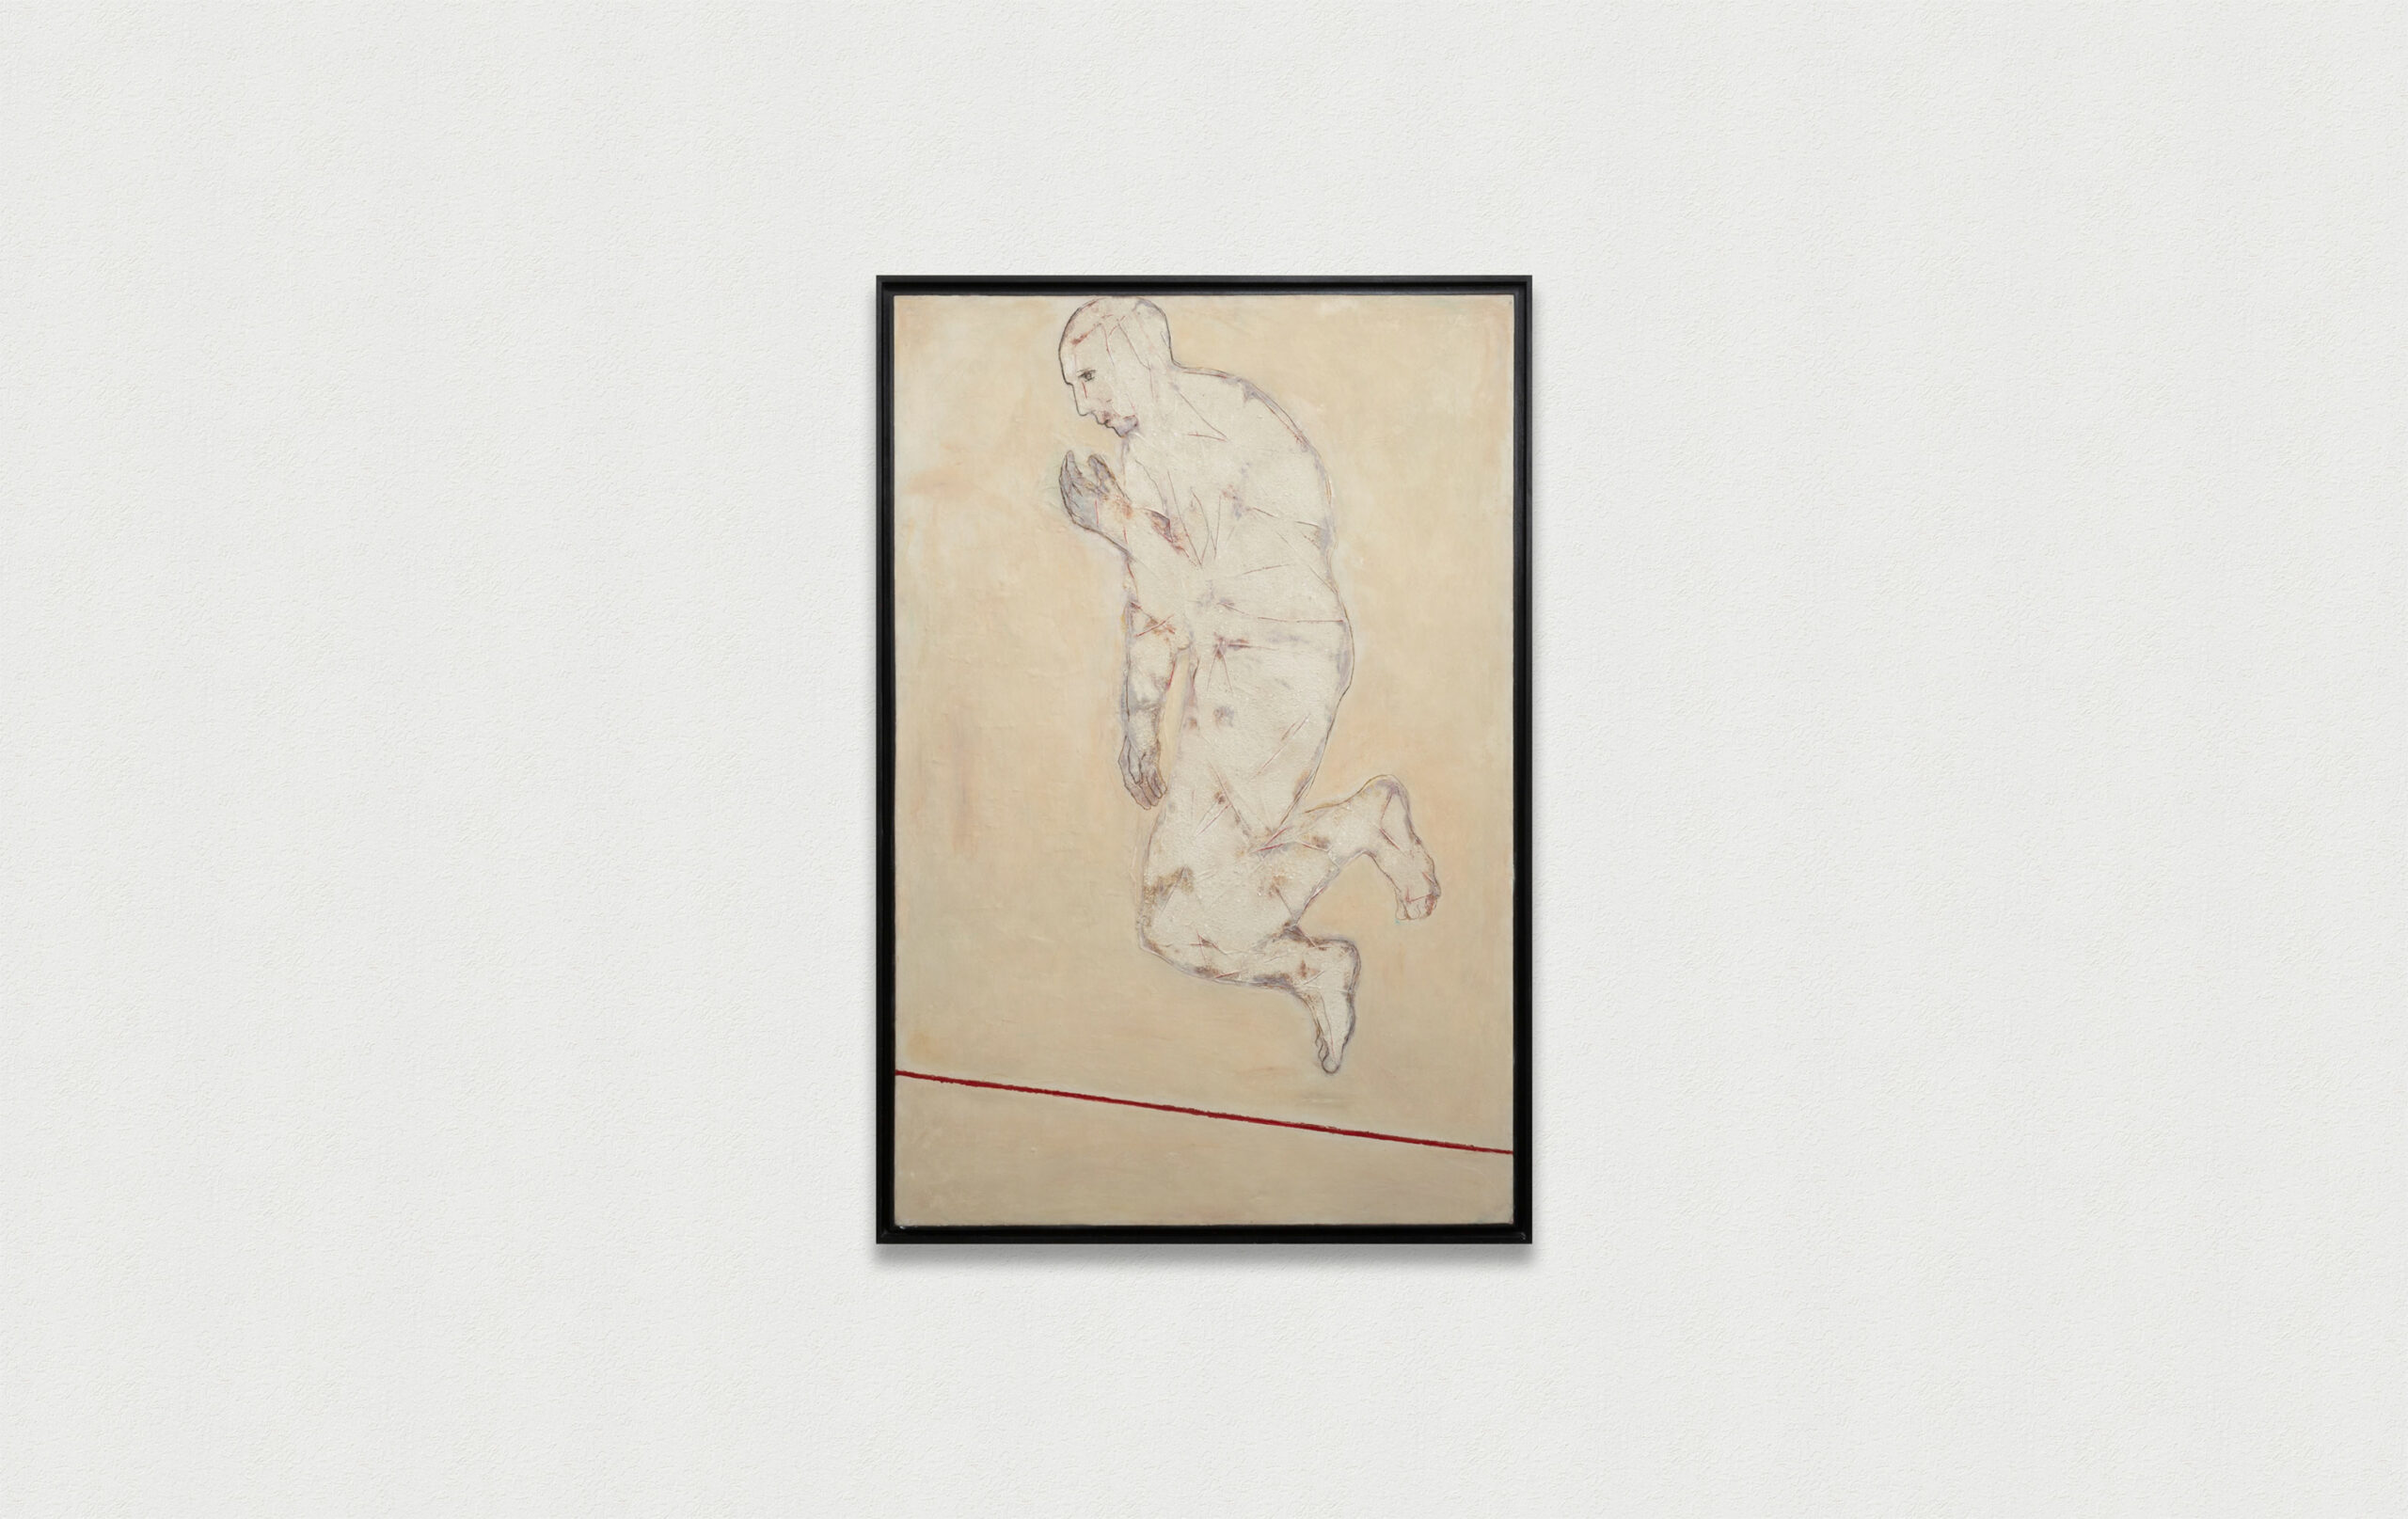 SANS TITRE, 2015
Cire et pigments sur bois 197 x 131,5 cm